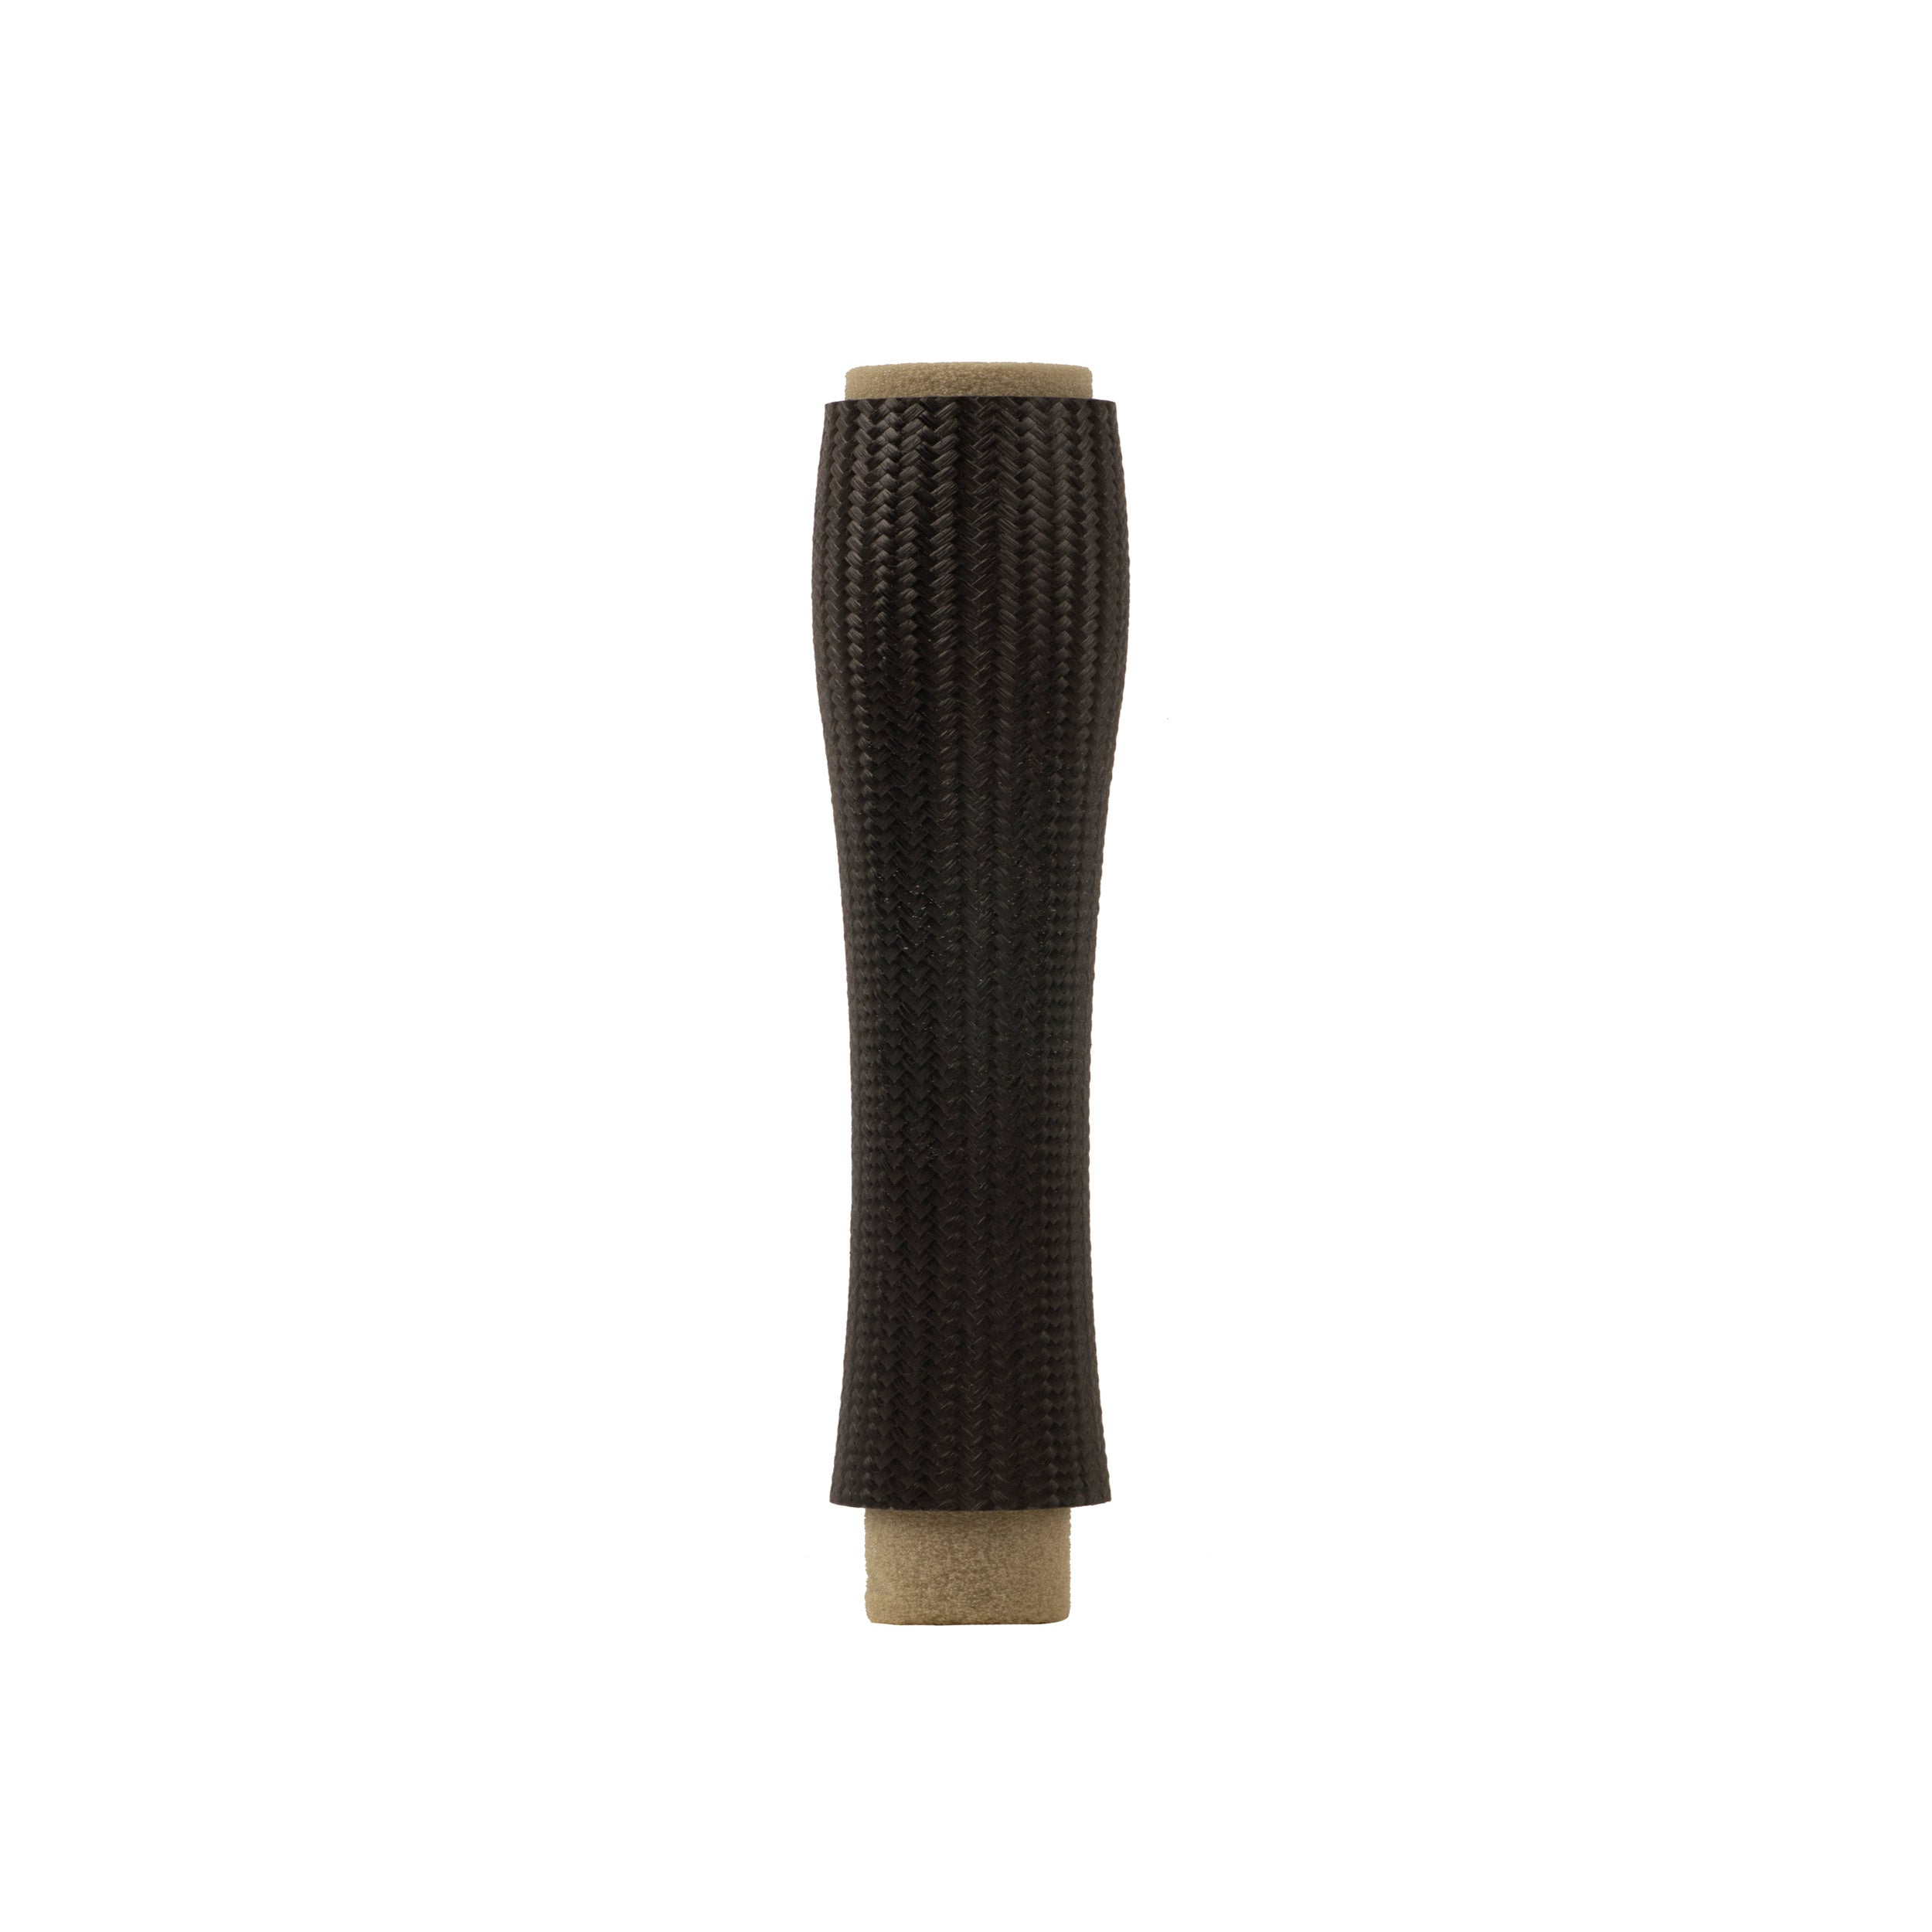 CFX Composite Rear Cast Grip 8.00"